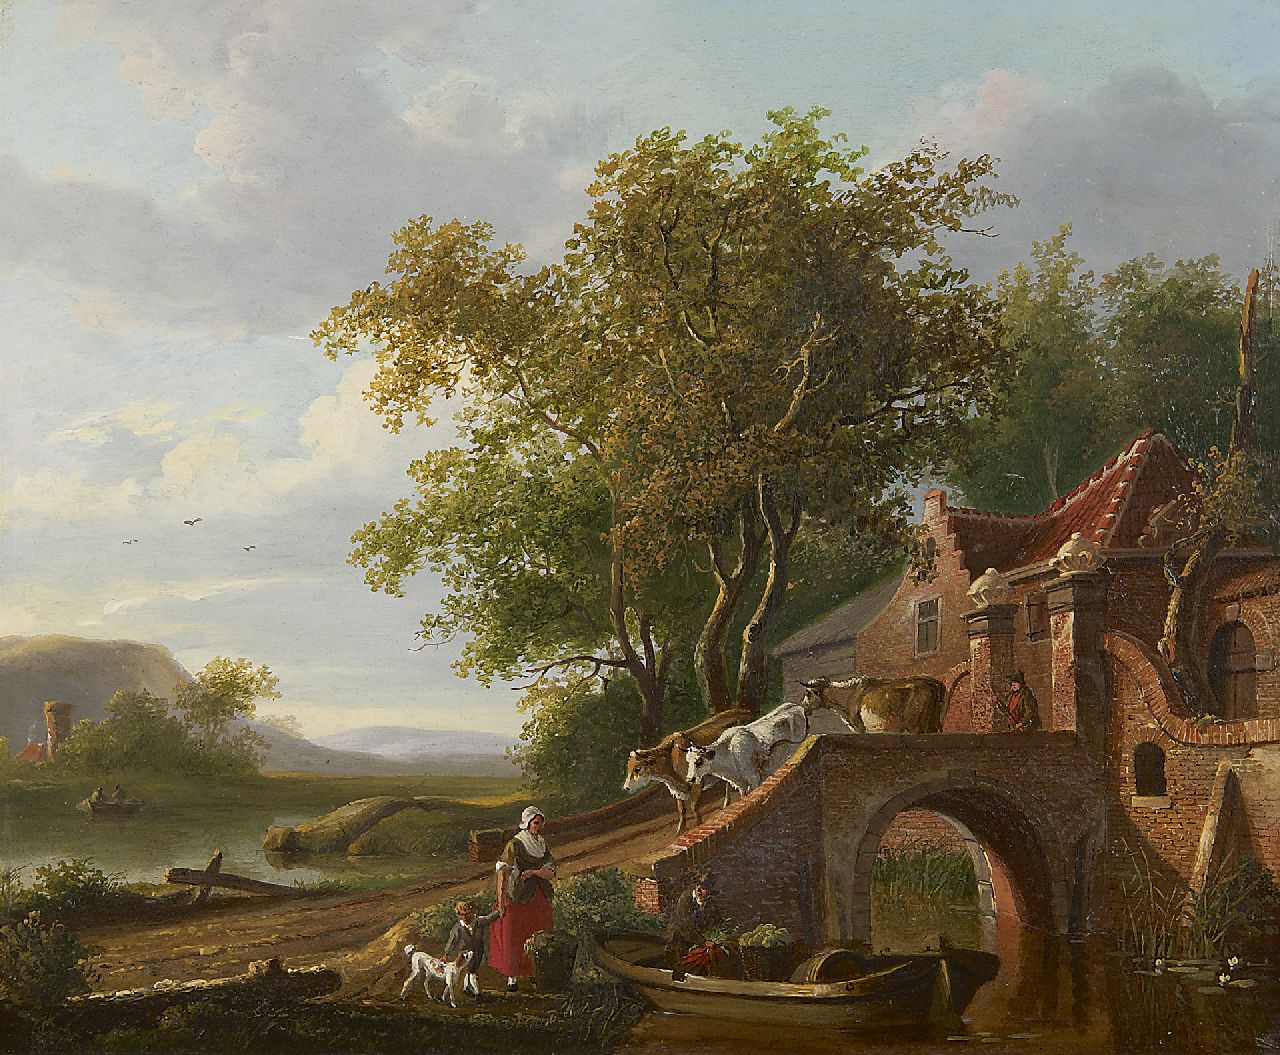 Stok J. van der | Jacobus van der Stok, Herder met koeien in zomerlandschap (pendant van winter), olieverf op paneel 32,1 x 38,6 cm